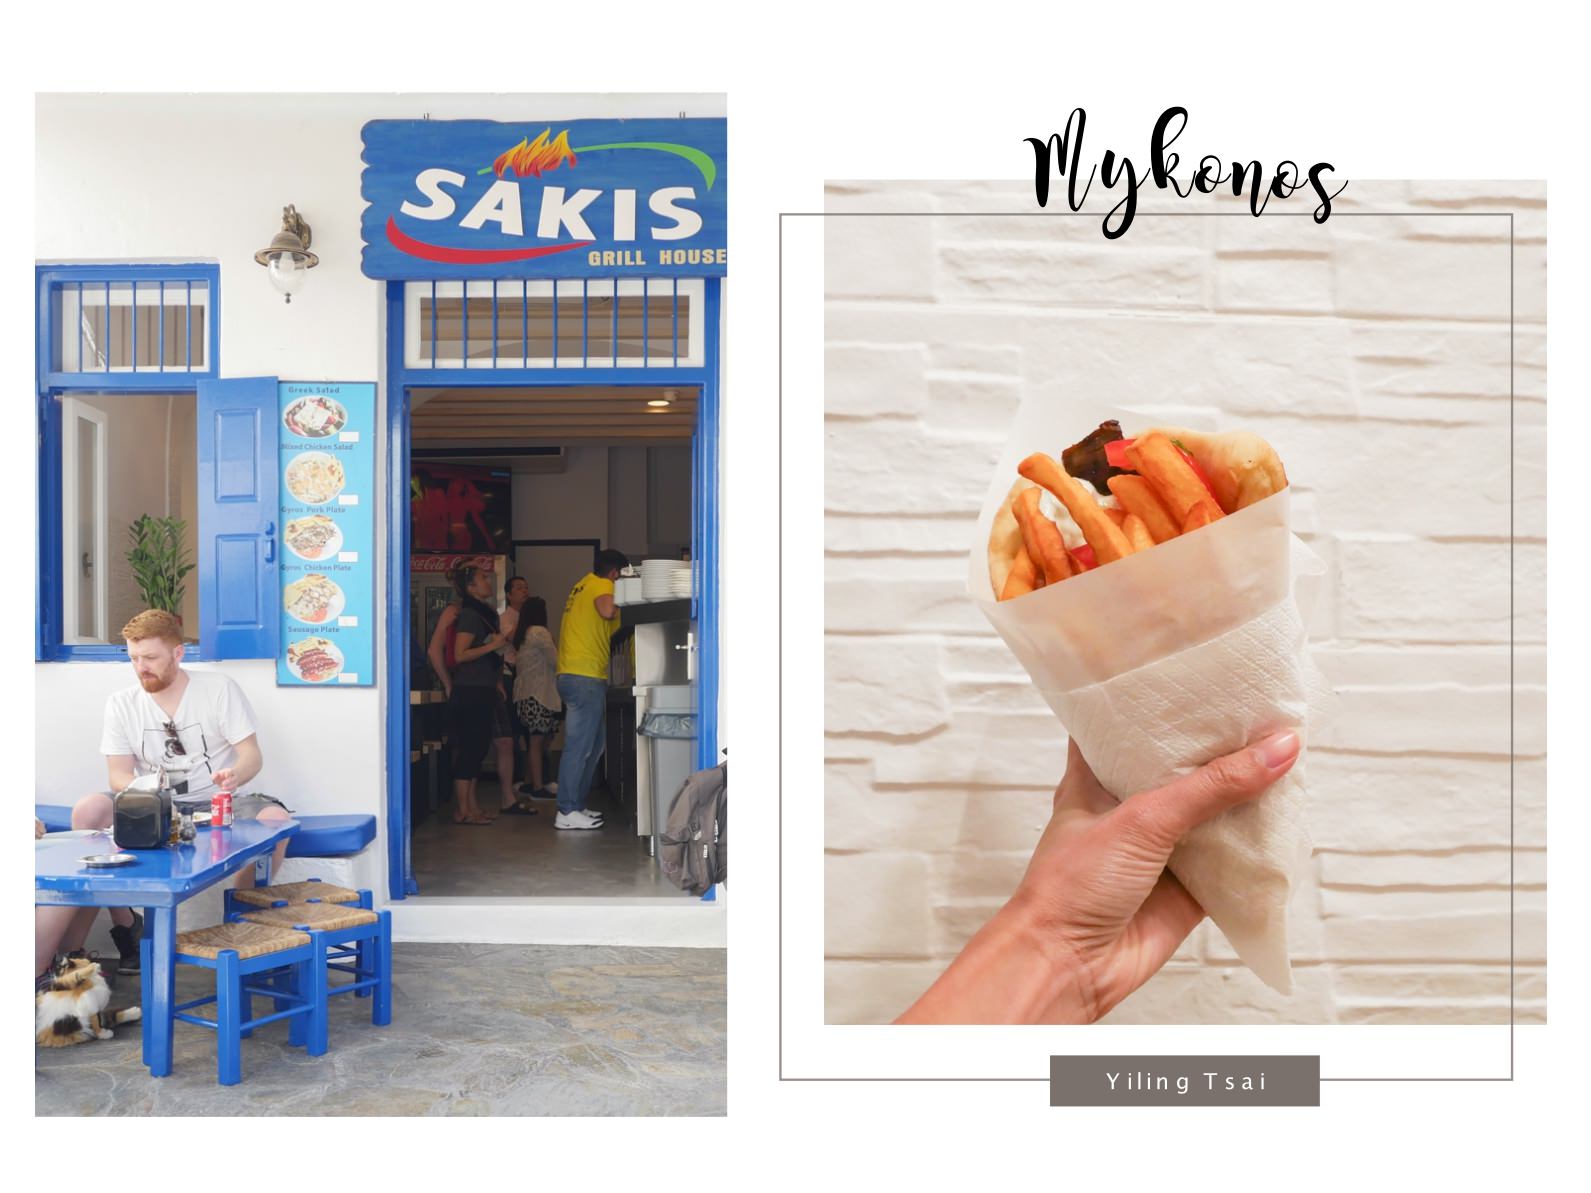 希臘米克諾斯美食 Sakis Grill House 平價傳統希臘烤肉捲餅沙威瑪